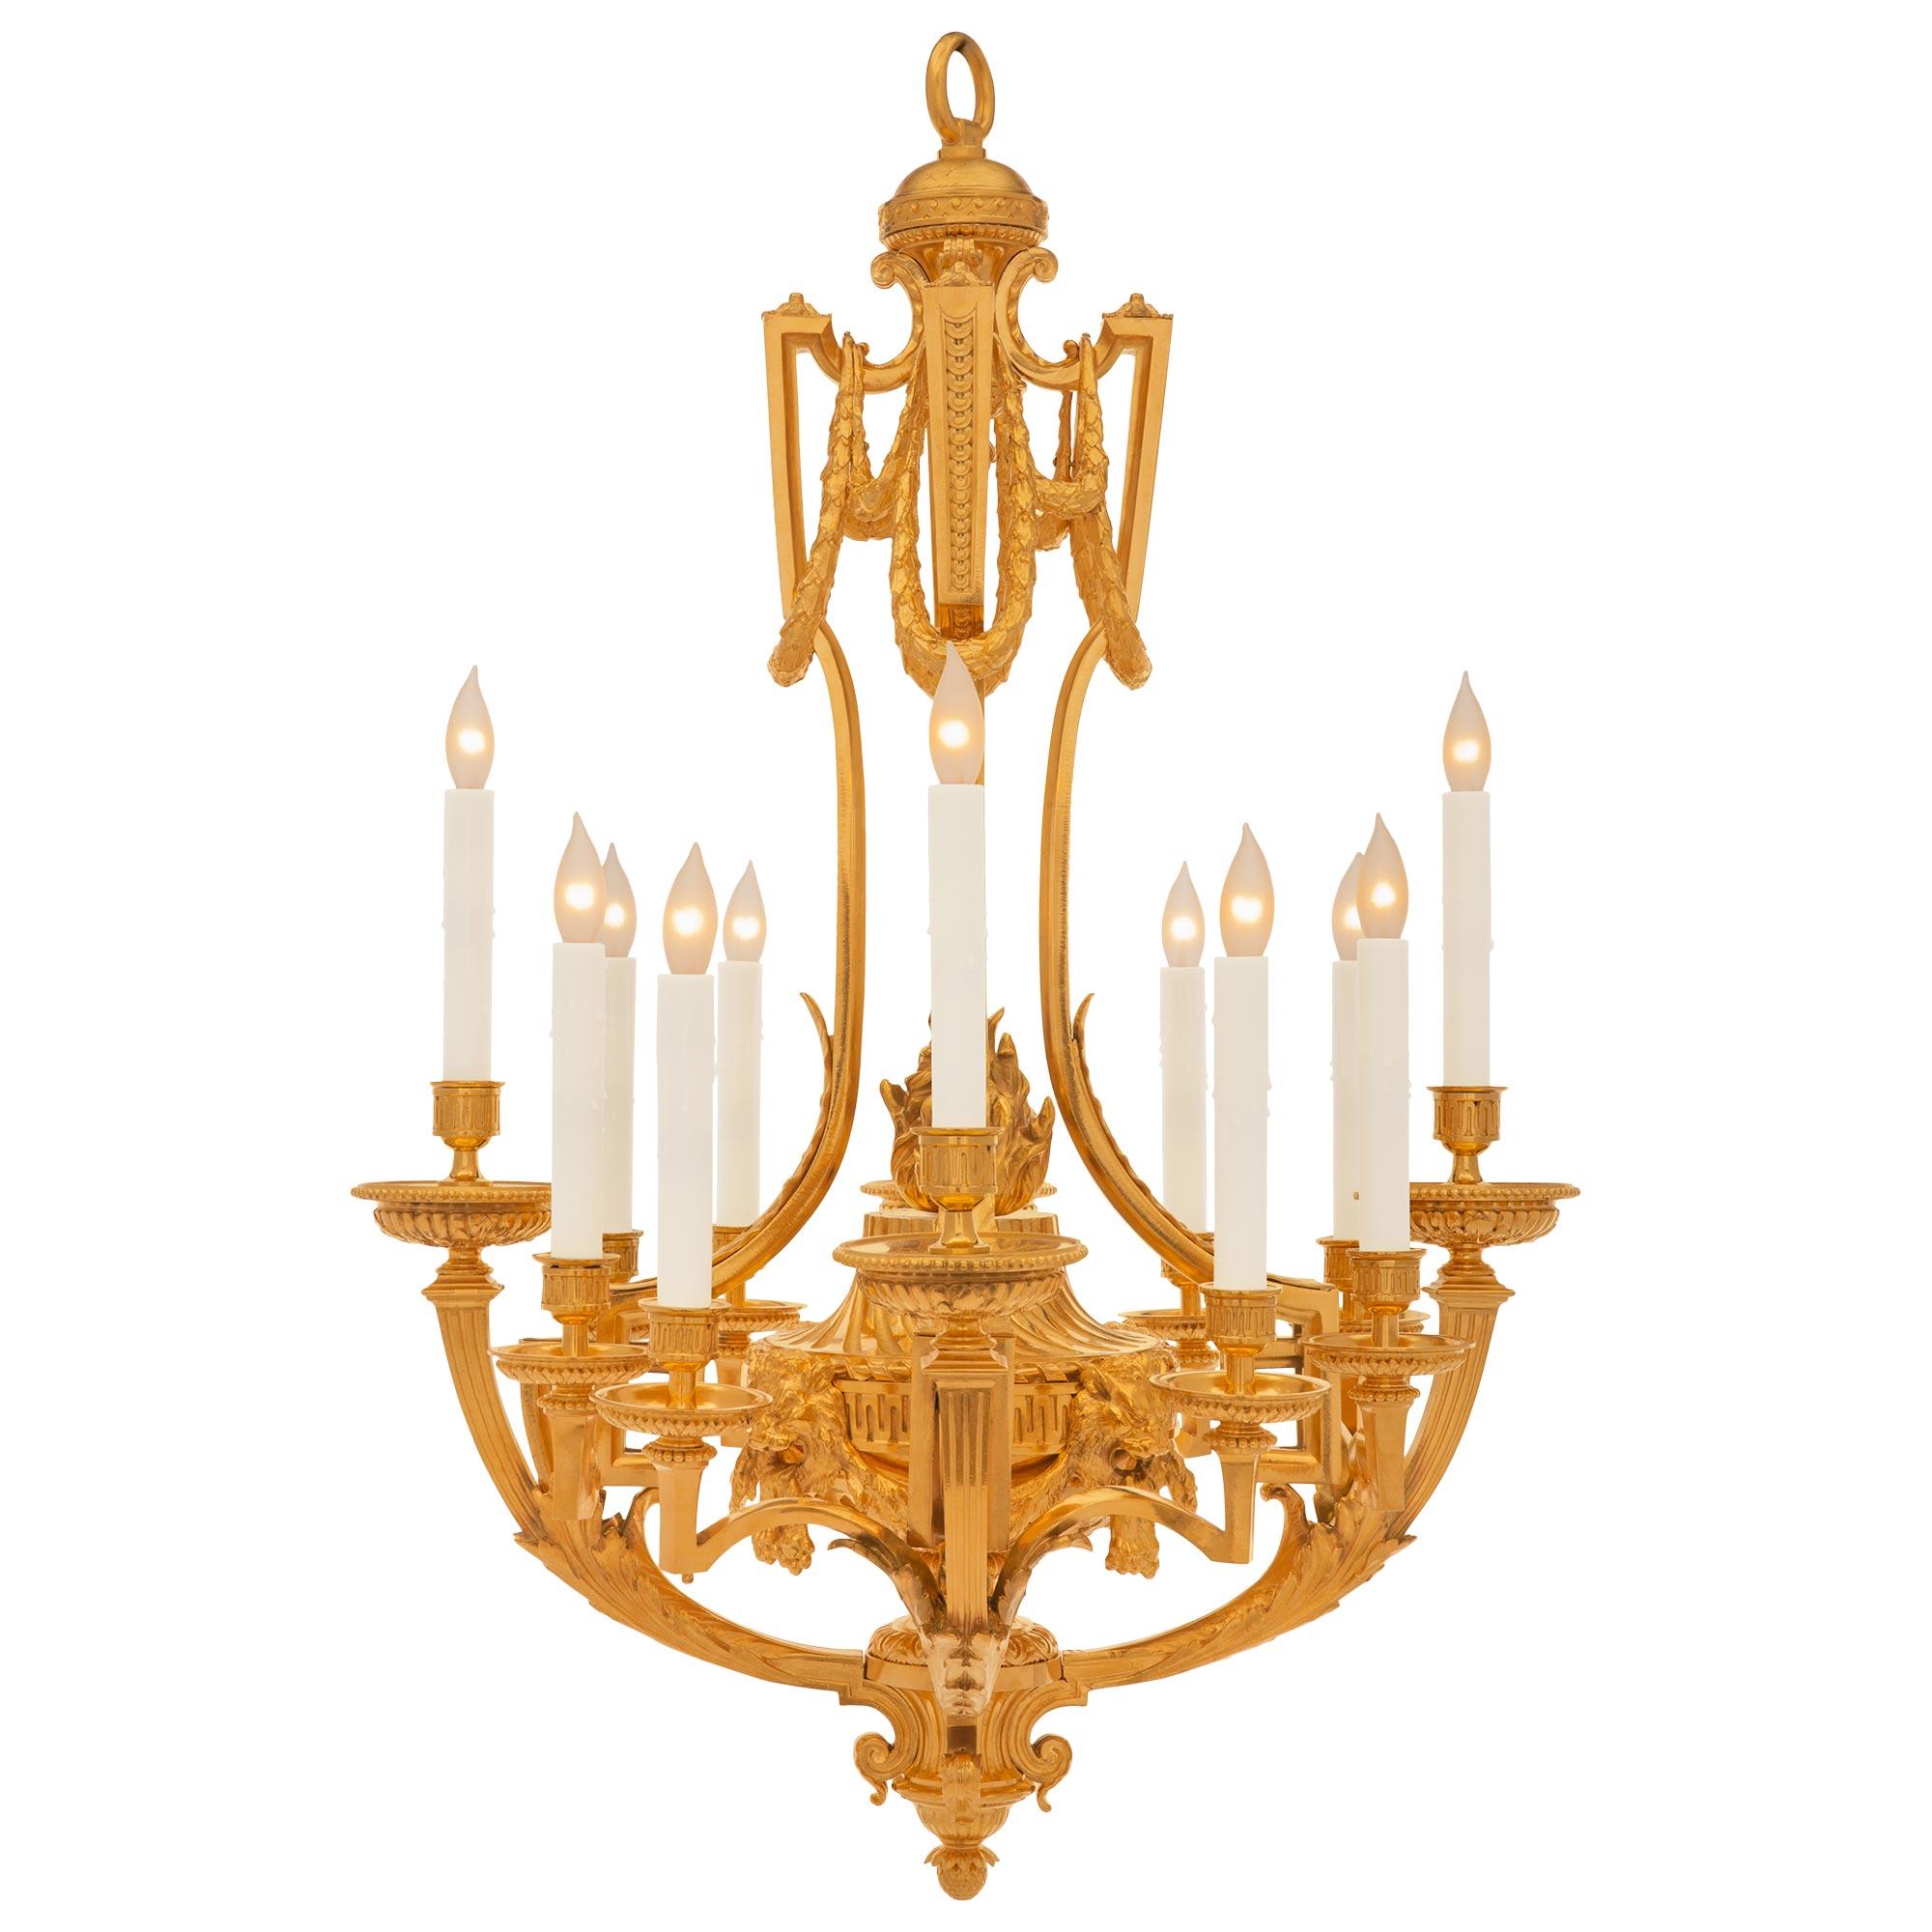 Un impressionnant lustre en bronze doré de très haute qualité, de style Louis XVI, datant du 19e siècle. Le lustre à douze branches est centré par un magnifique fleuron en forme de gland au-dessous d'une réserve cannelée finement cannelée et